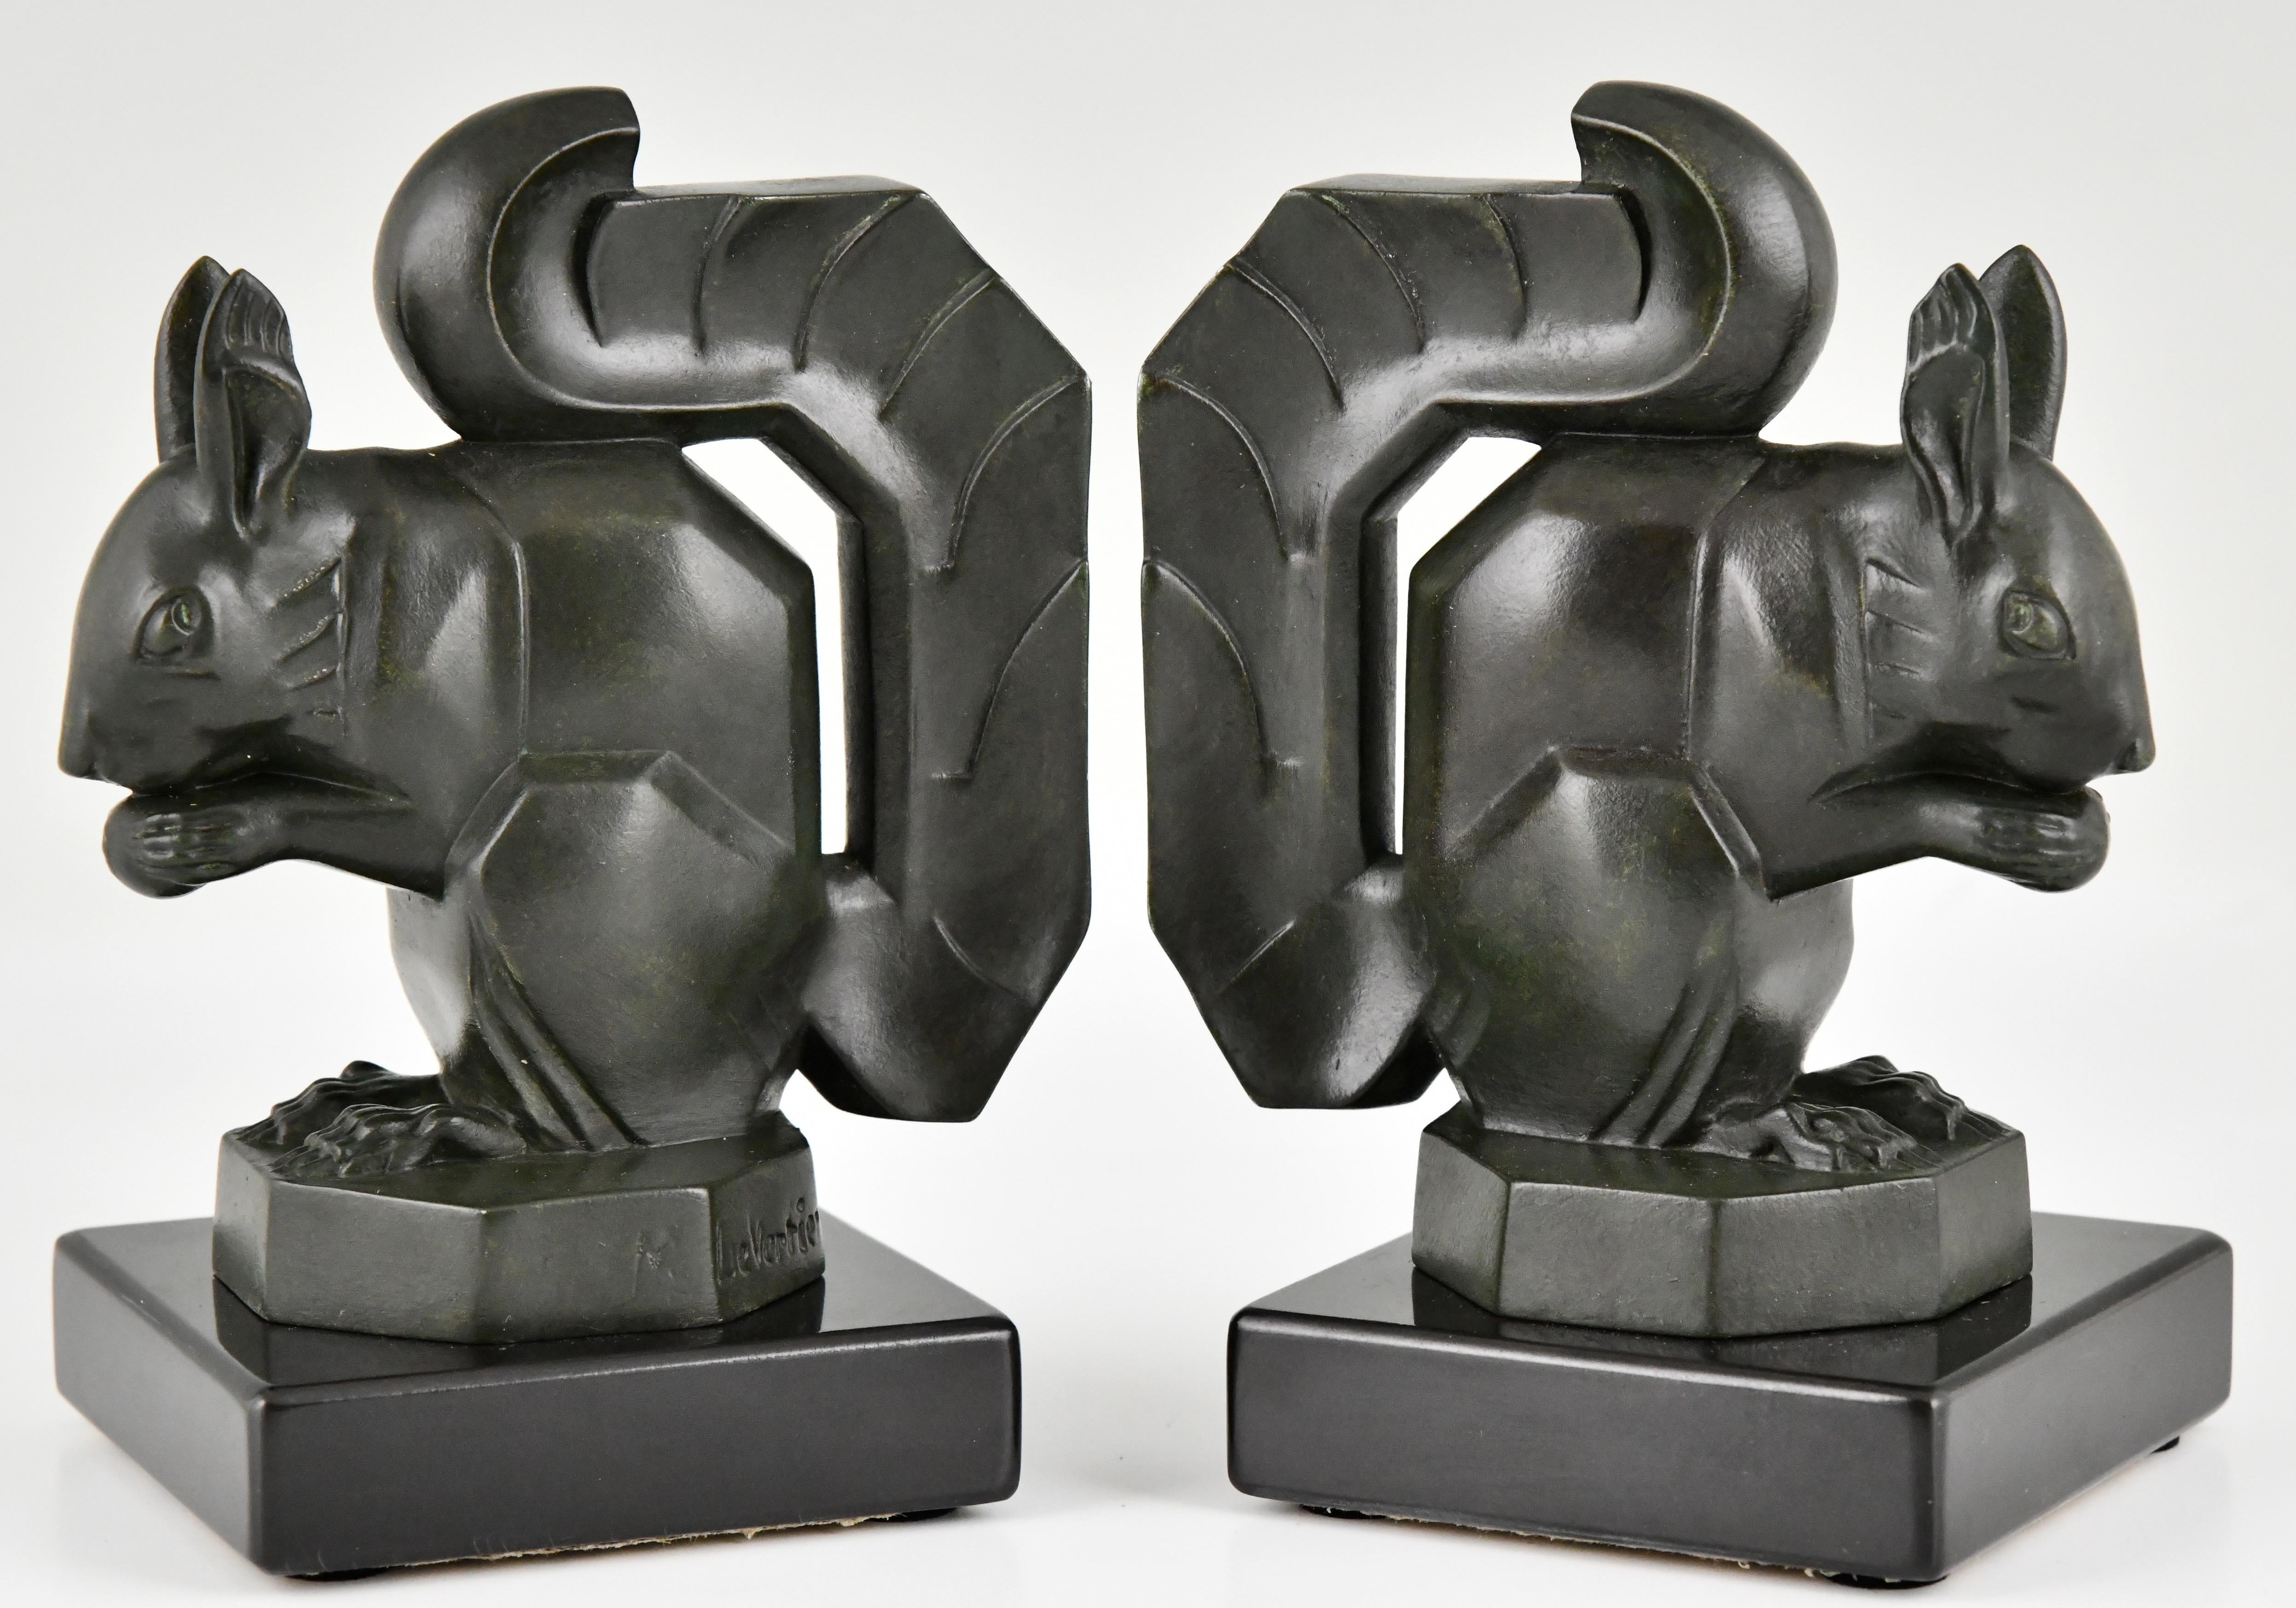 Art Deco Eichhörnchen Buchstützen von Max Le Verrier
Kunstmetall, dunkelgrüne Patina.
Sockel aus schwarzem belgischem Marmor.
Frankreich 1930